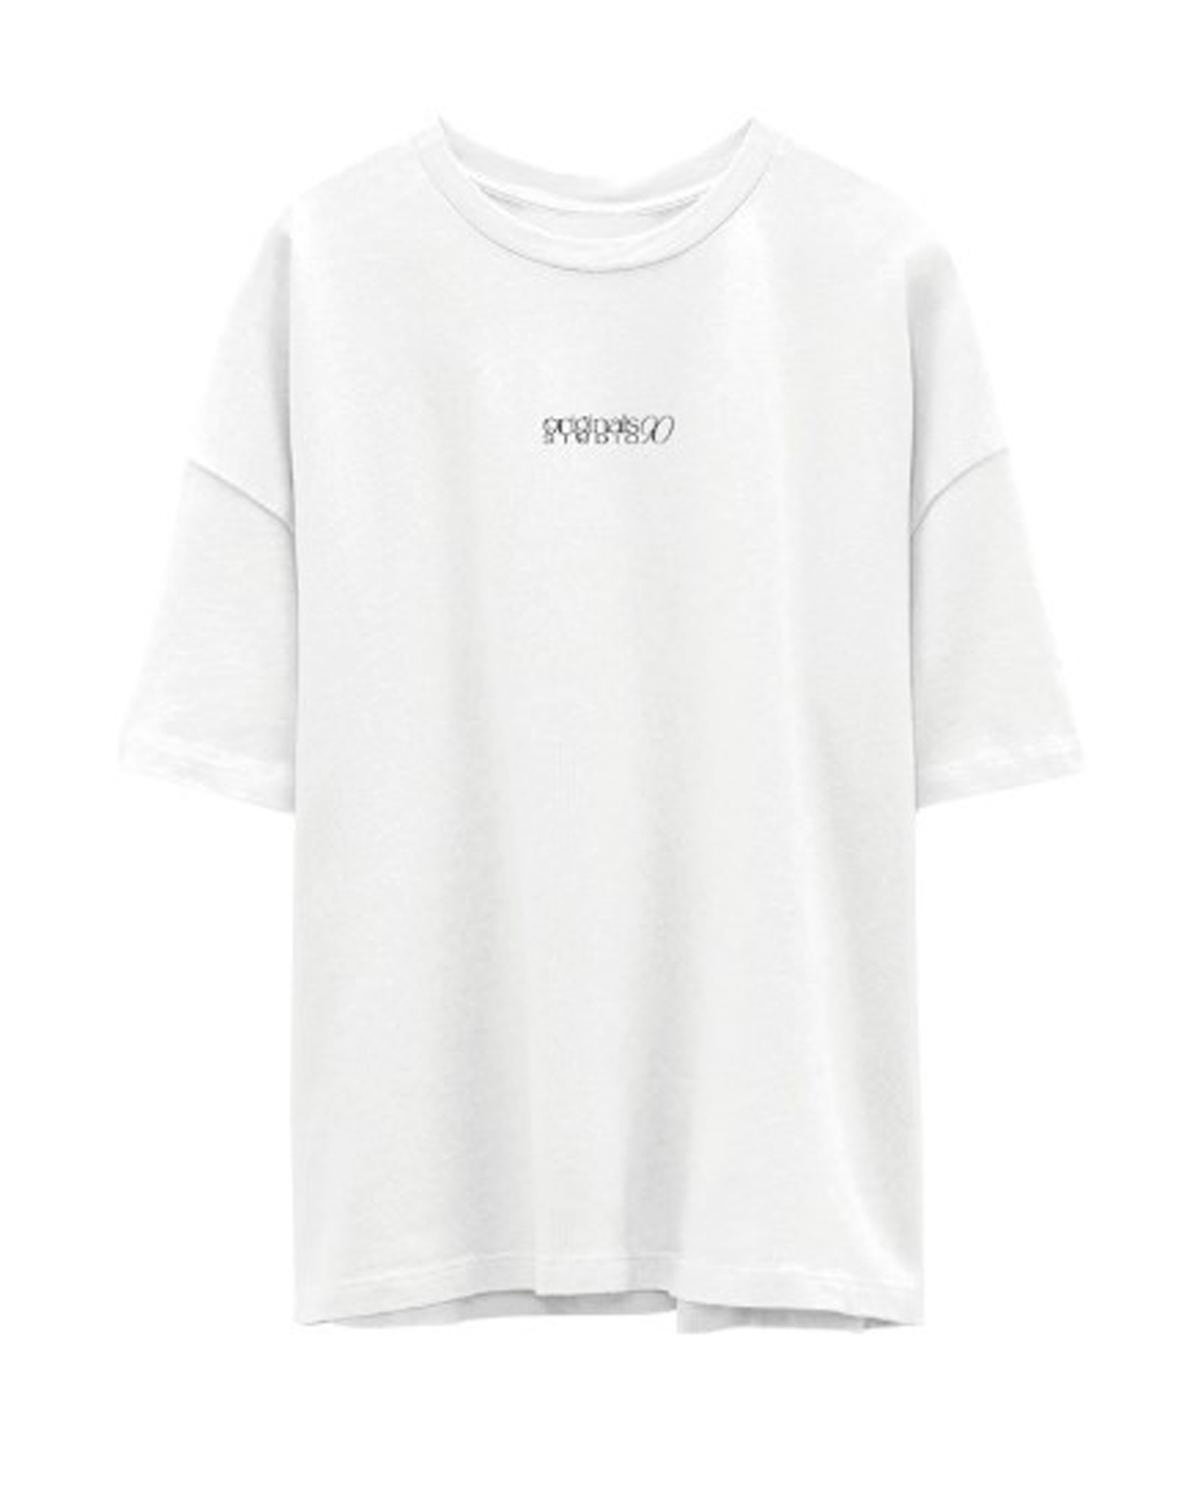 Jack & Jones T-shirt Estampar Decote Redondo -Bright White - 12274935